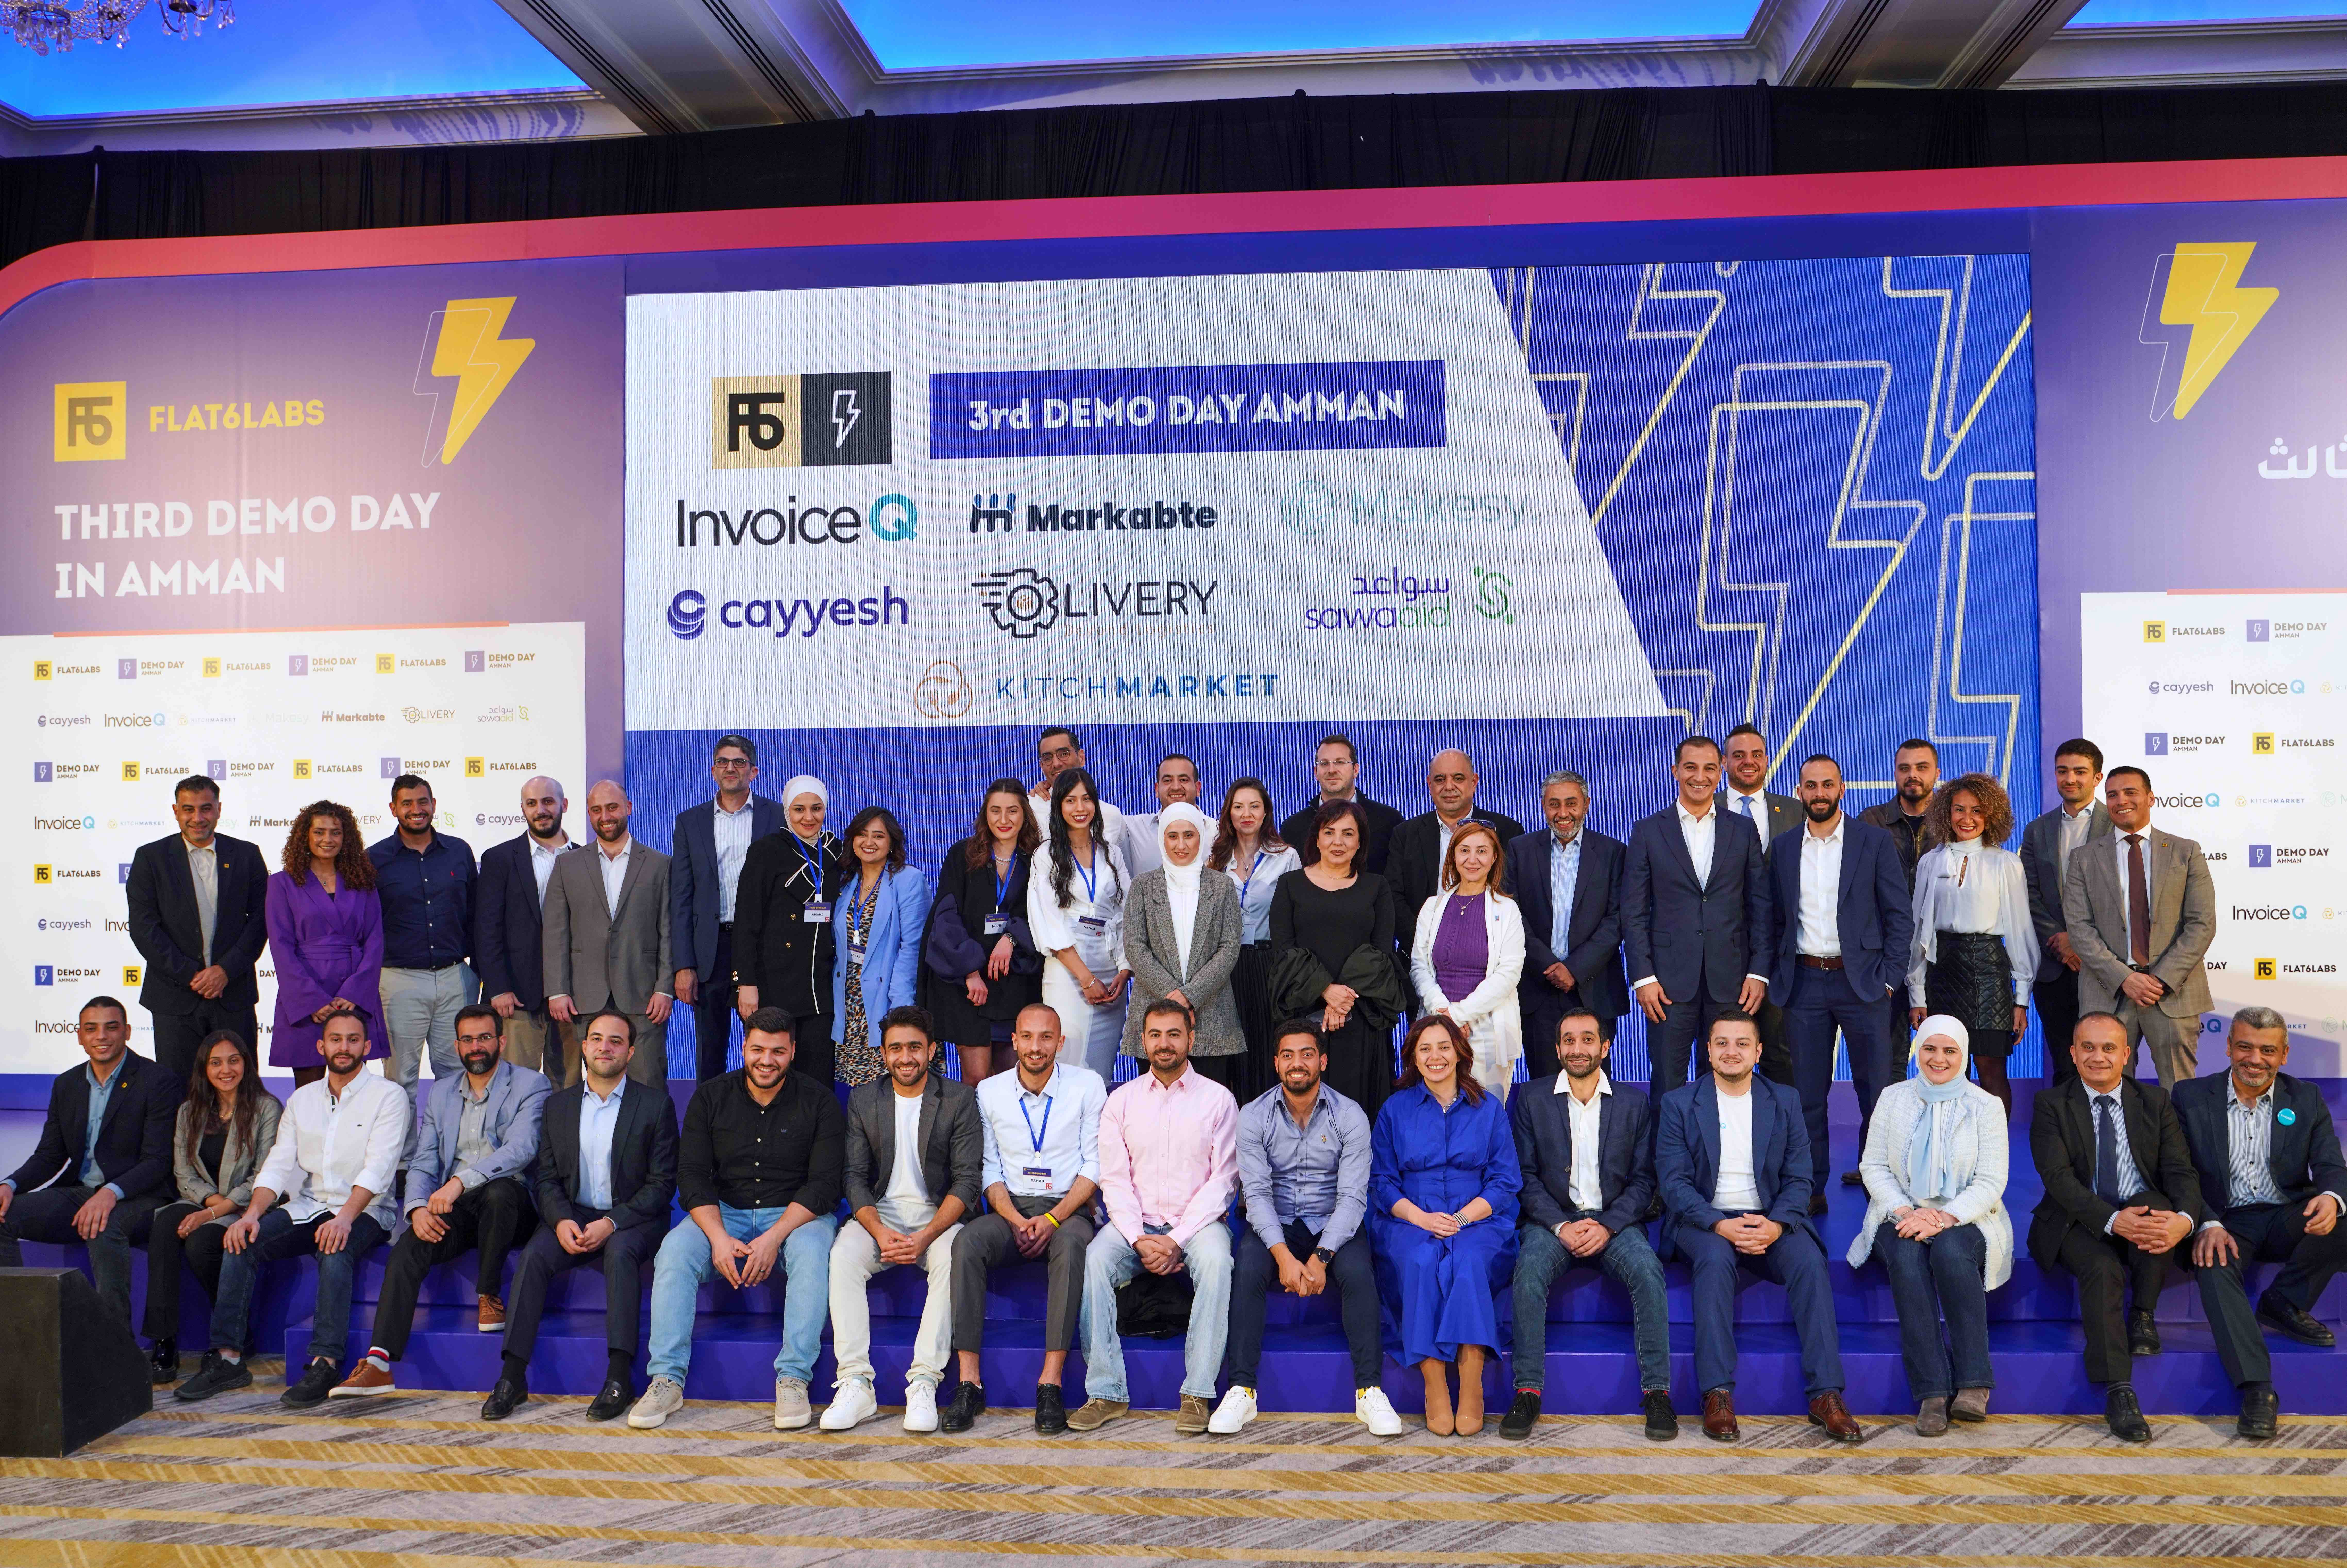 شركة Flat6Labs تحتفل بنجاح المزيد من الشركات الناشئة في يوم العرض الثالث في عمّان